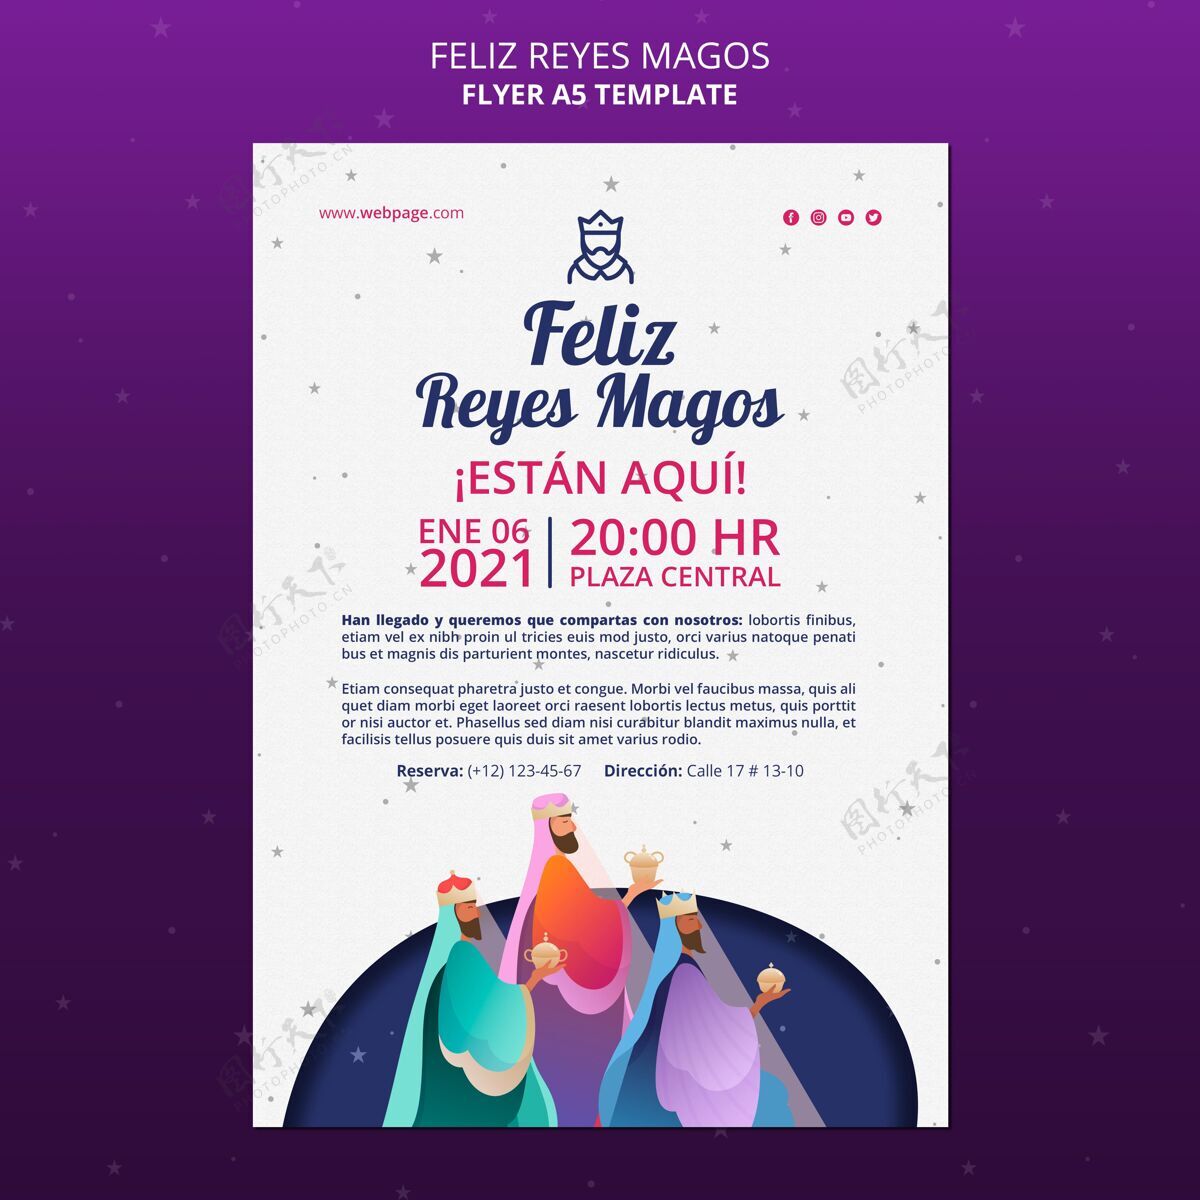 节日Felizreyesmagos传单模板传统宗教传单